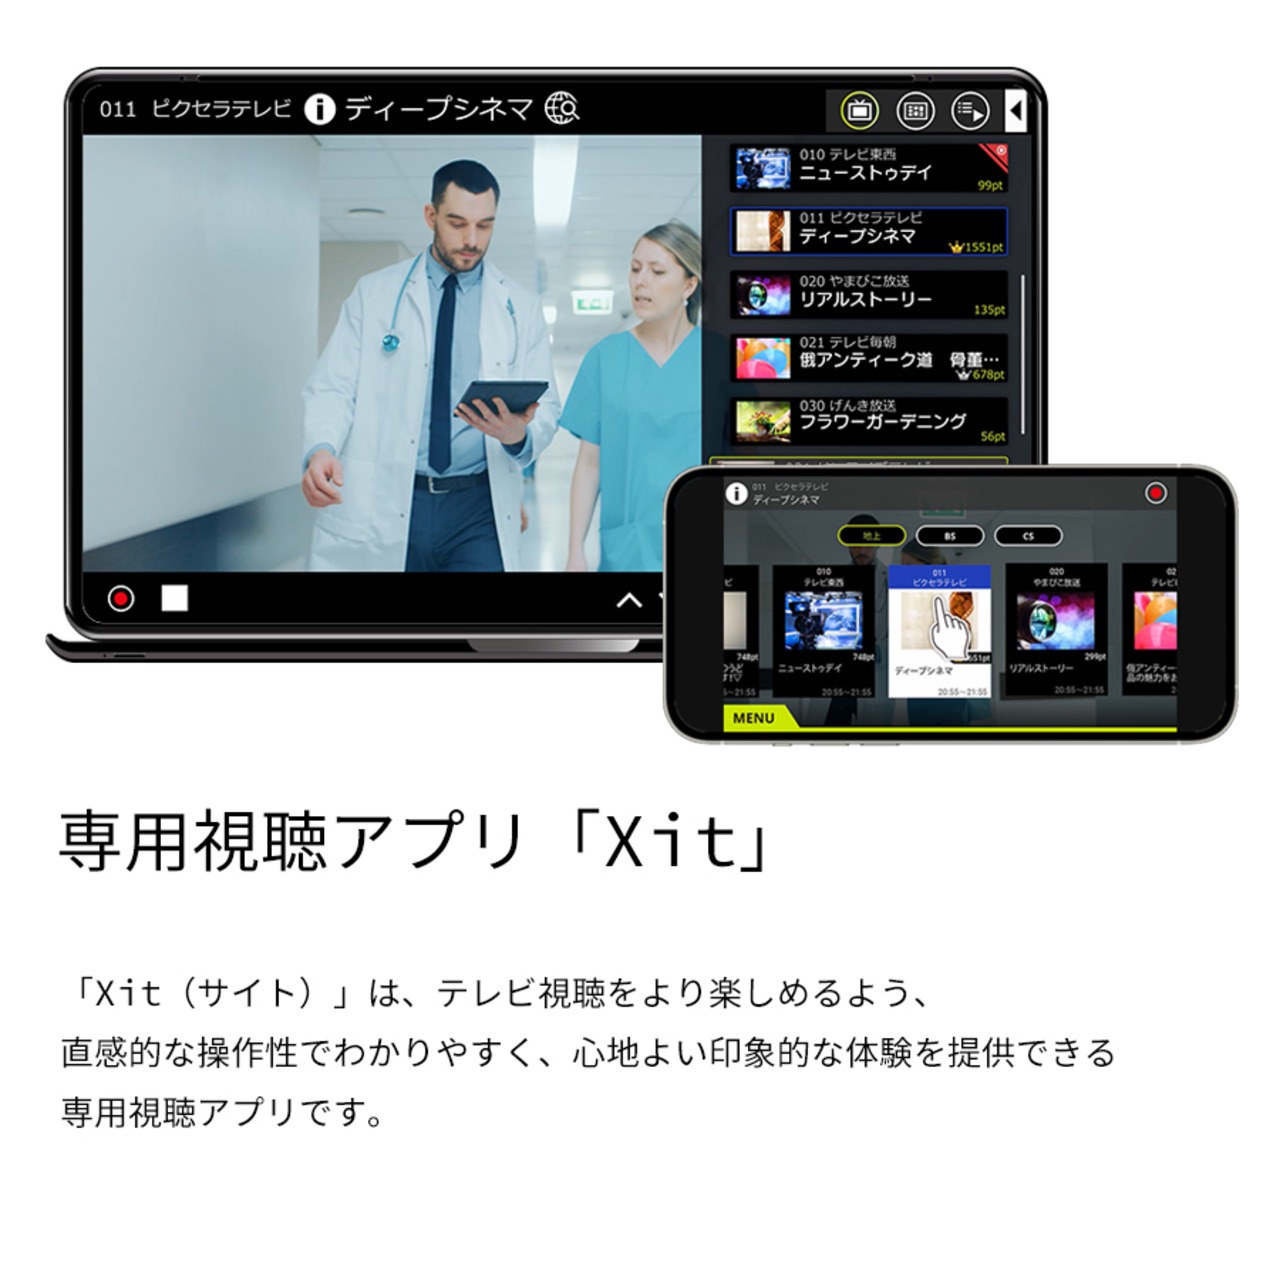 ピクセラテレビチューナー Xit AirBox (サイト・エアーボックス) XIT-AIR120CW